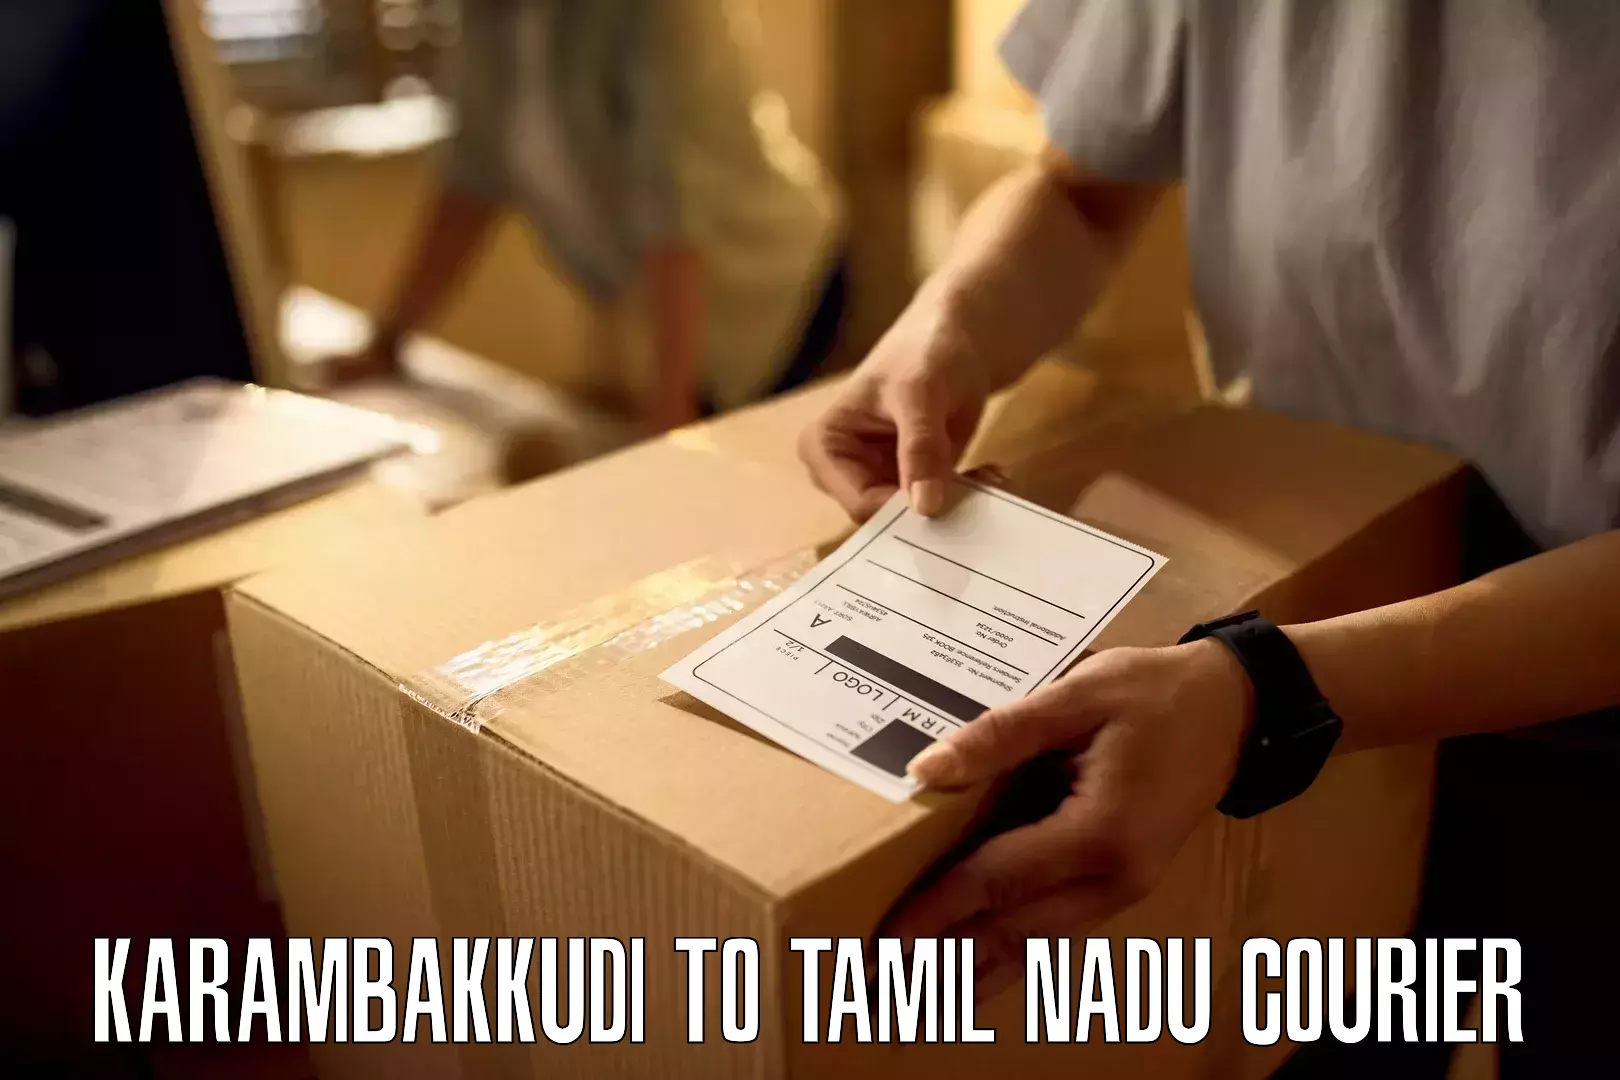 Comprehensive parcel tracking Karambakkudi to Ulundurpet